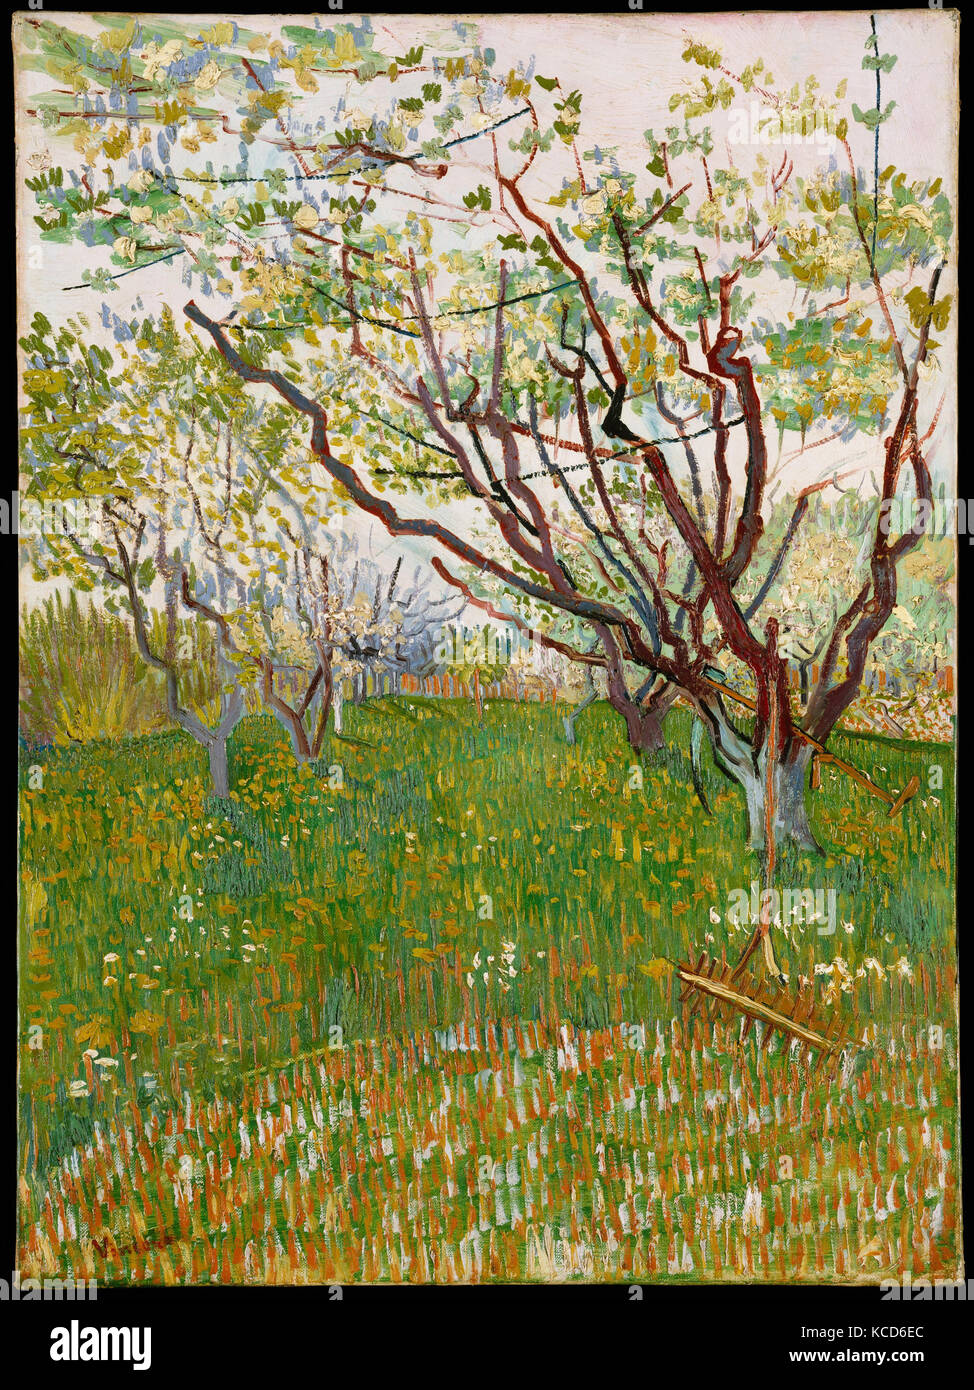 Le Verger en fleurs, 1888, huile sur toile, 28 x 21 1/2 in. (72,4 x 53,3 cm), peintures, Vincent van Gogh (Néerlandais, Zundert 1853 Banque D'Images